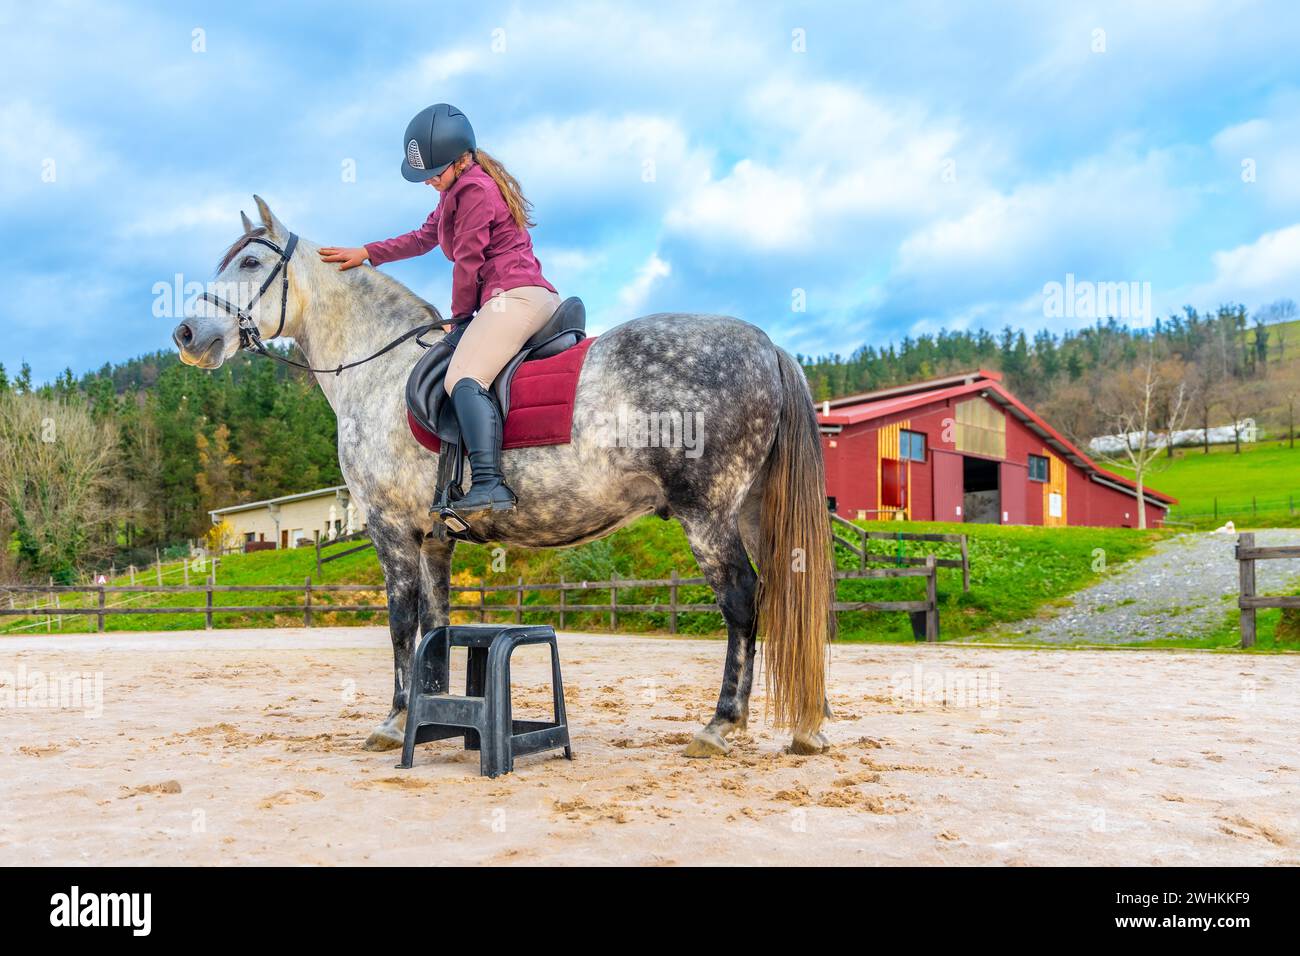 Mädchen mit Schutzausrüstung, das auf einem Pferd in einem Reitzentrum reitet Stockfoto